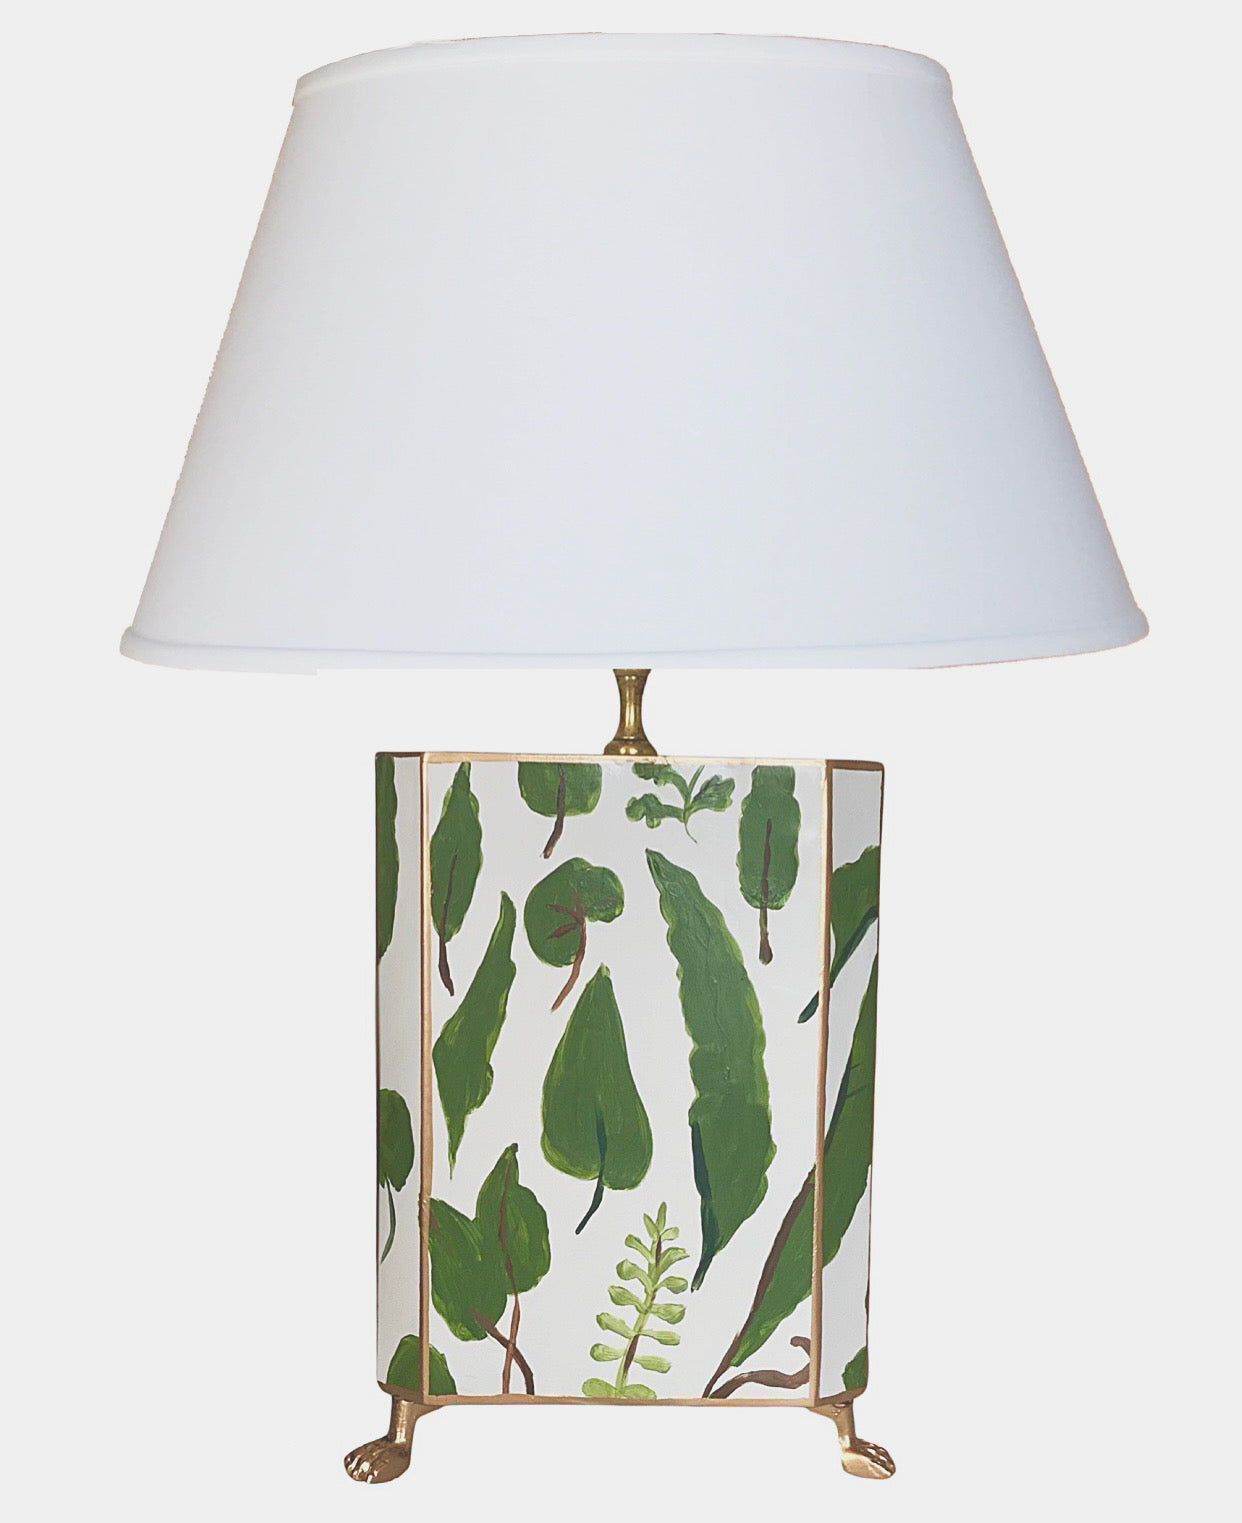 Dana Gibson Fern Lamp